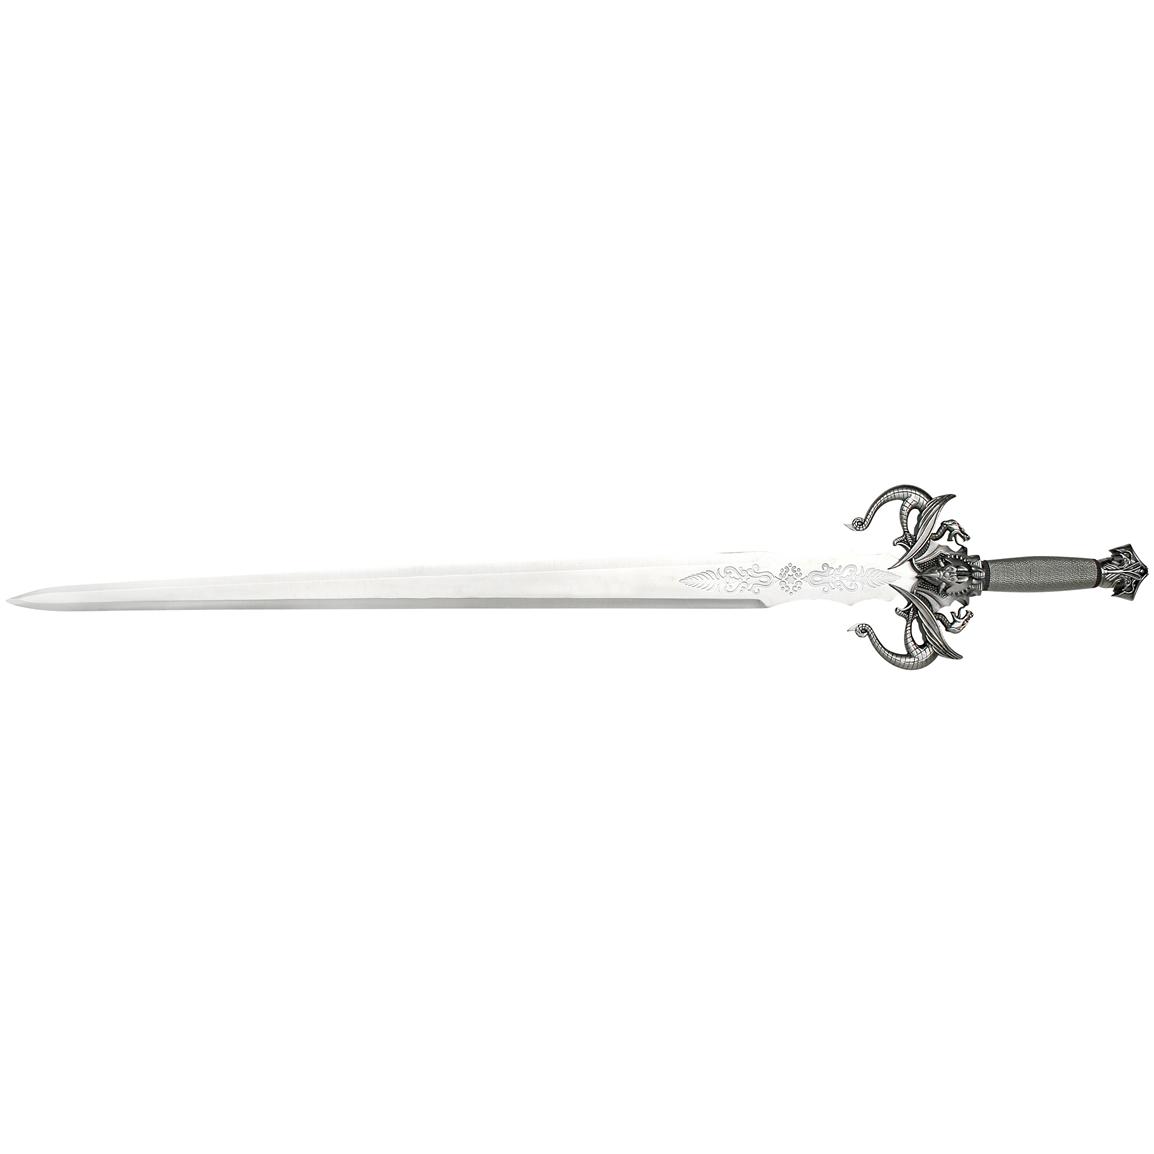 Master Cutlery® 41 inch Fantasy Sword with Plaque